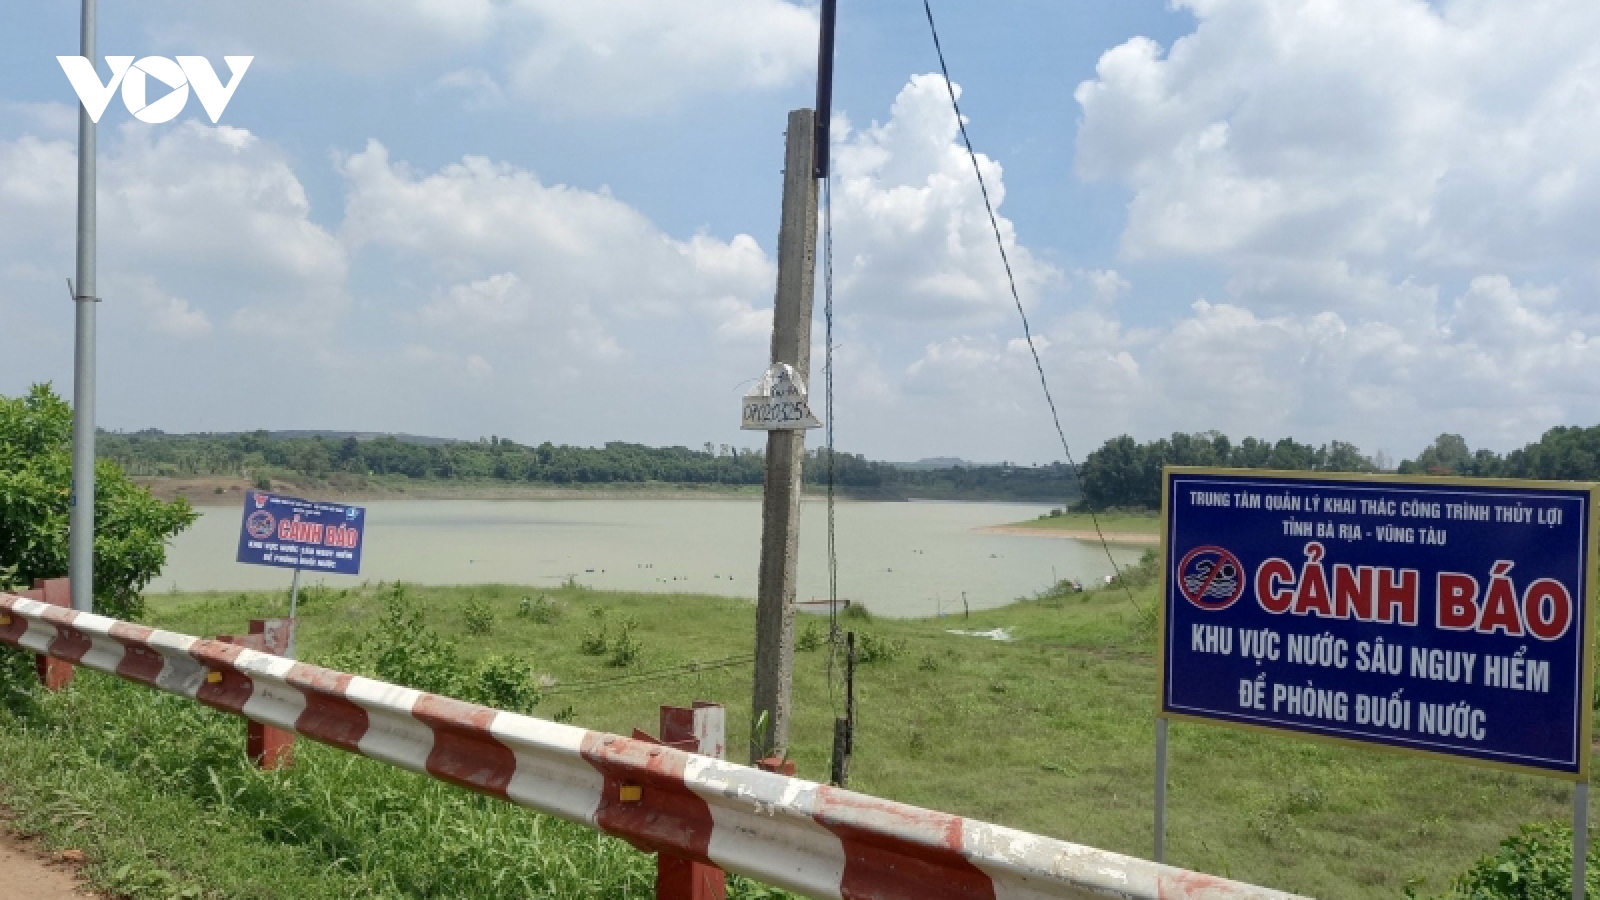 Thả lưới đánh bắt cá, 2 anh em bị đuối nước ở hồ Suối Rao